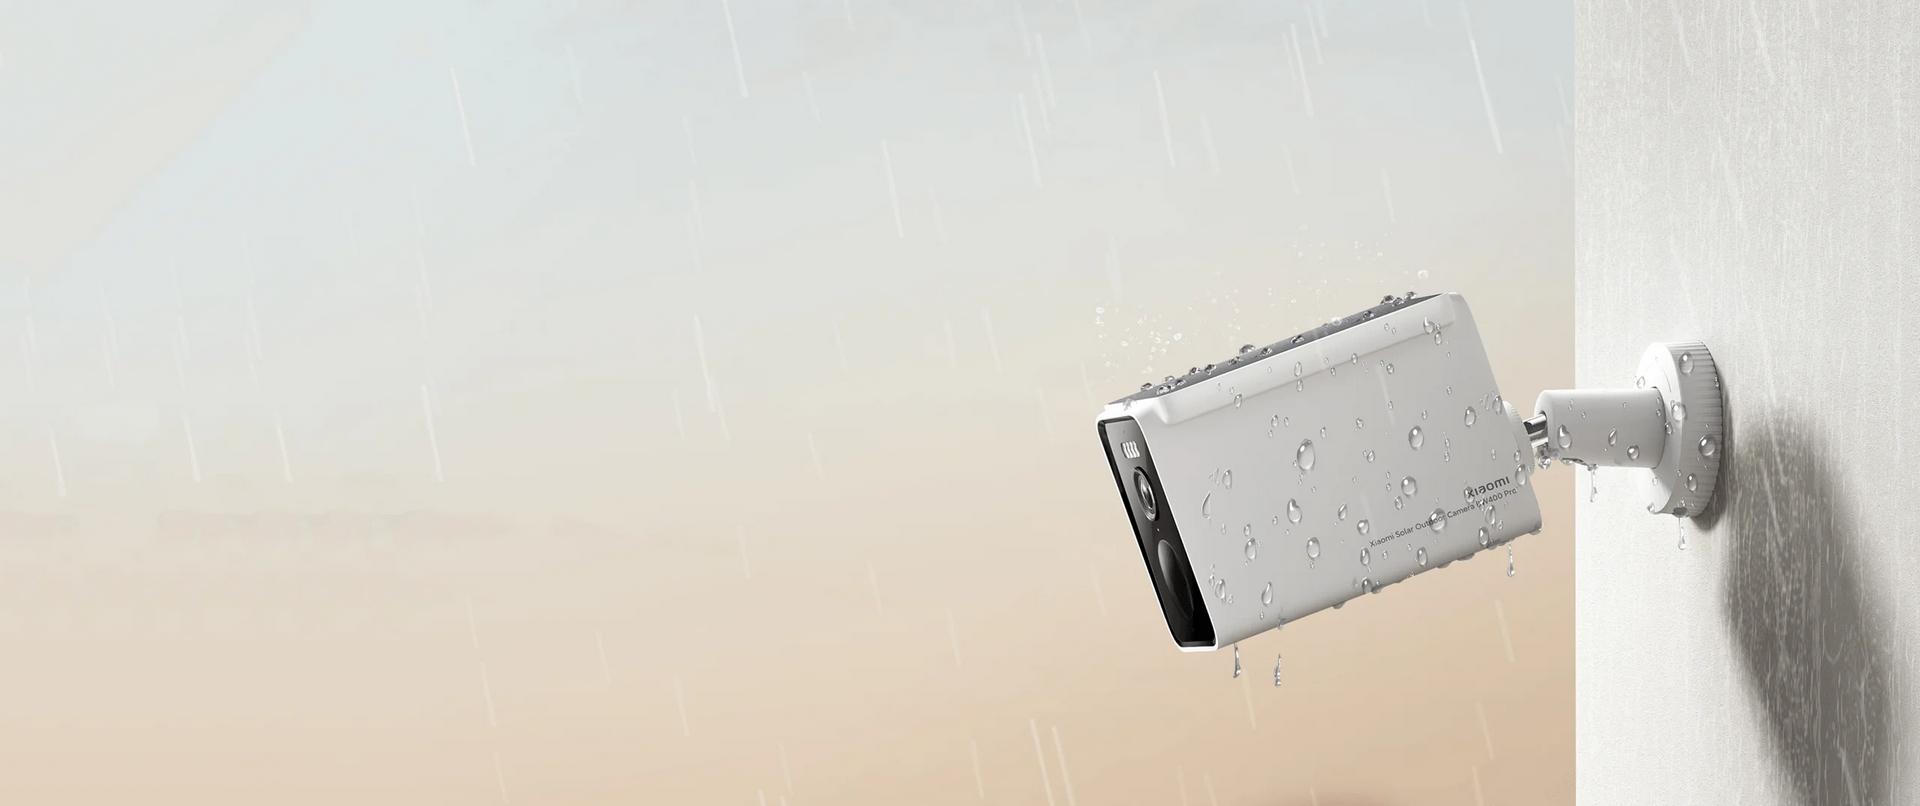 Kamera zewnętrzna IP Wi-Fi Xiaomi BW400 Pro z zasilaniem solarnym i stacją bazową - ochrona w każdych warunkach